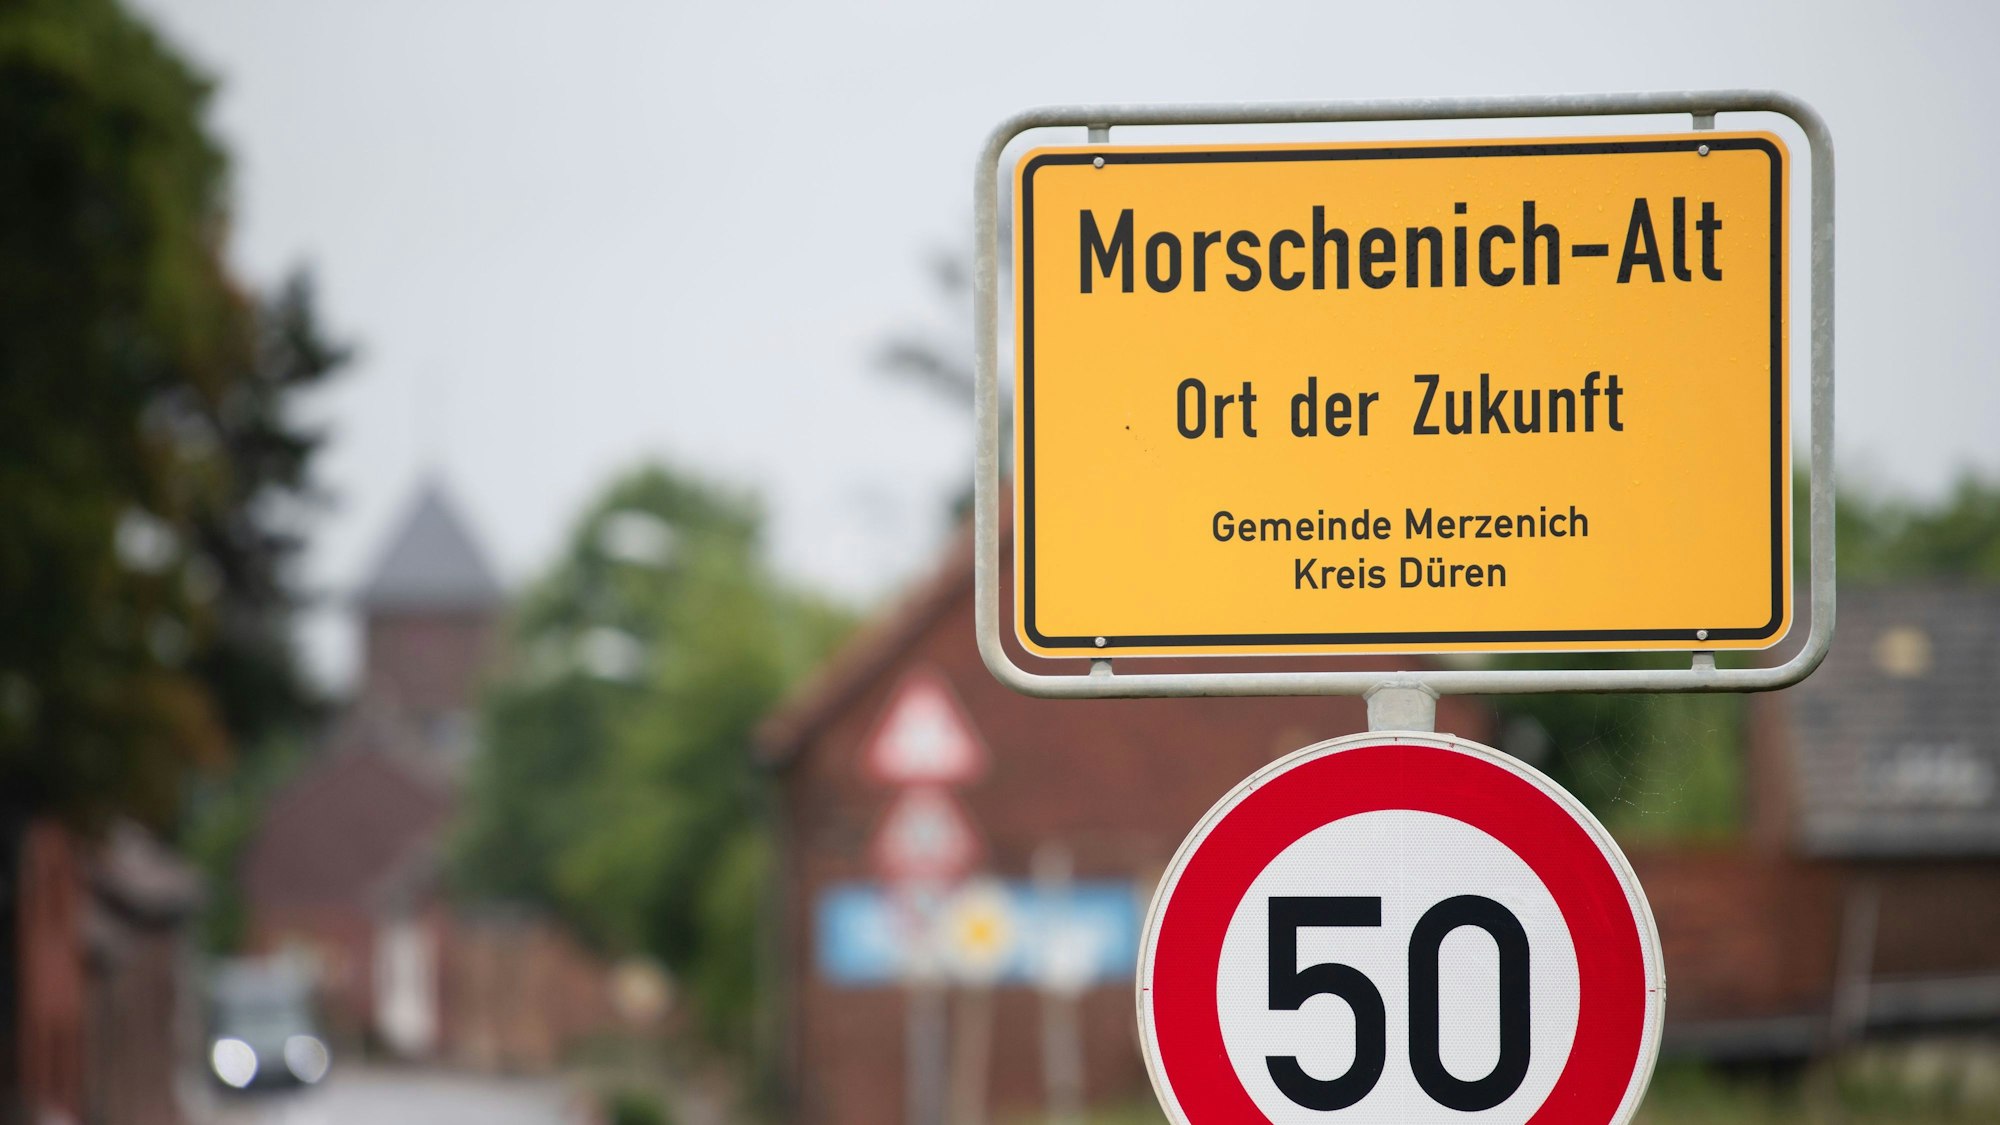 21.07.2022, Nordrhein-Westfalen, Morschenich: Das Ortseingangsschild von Morschenich-Alt. Der kleine Ort Morschenich am Tagebau Hambach sollte den Braunkohlebaggern weichen. Doch dieses Vorhaben wurde aufgeben.